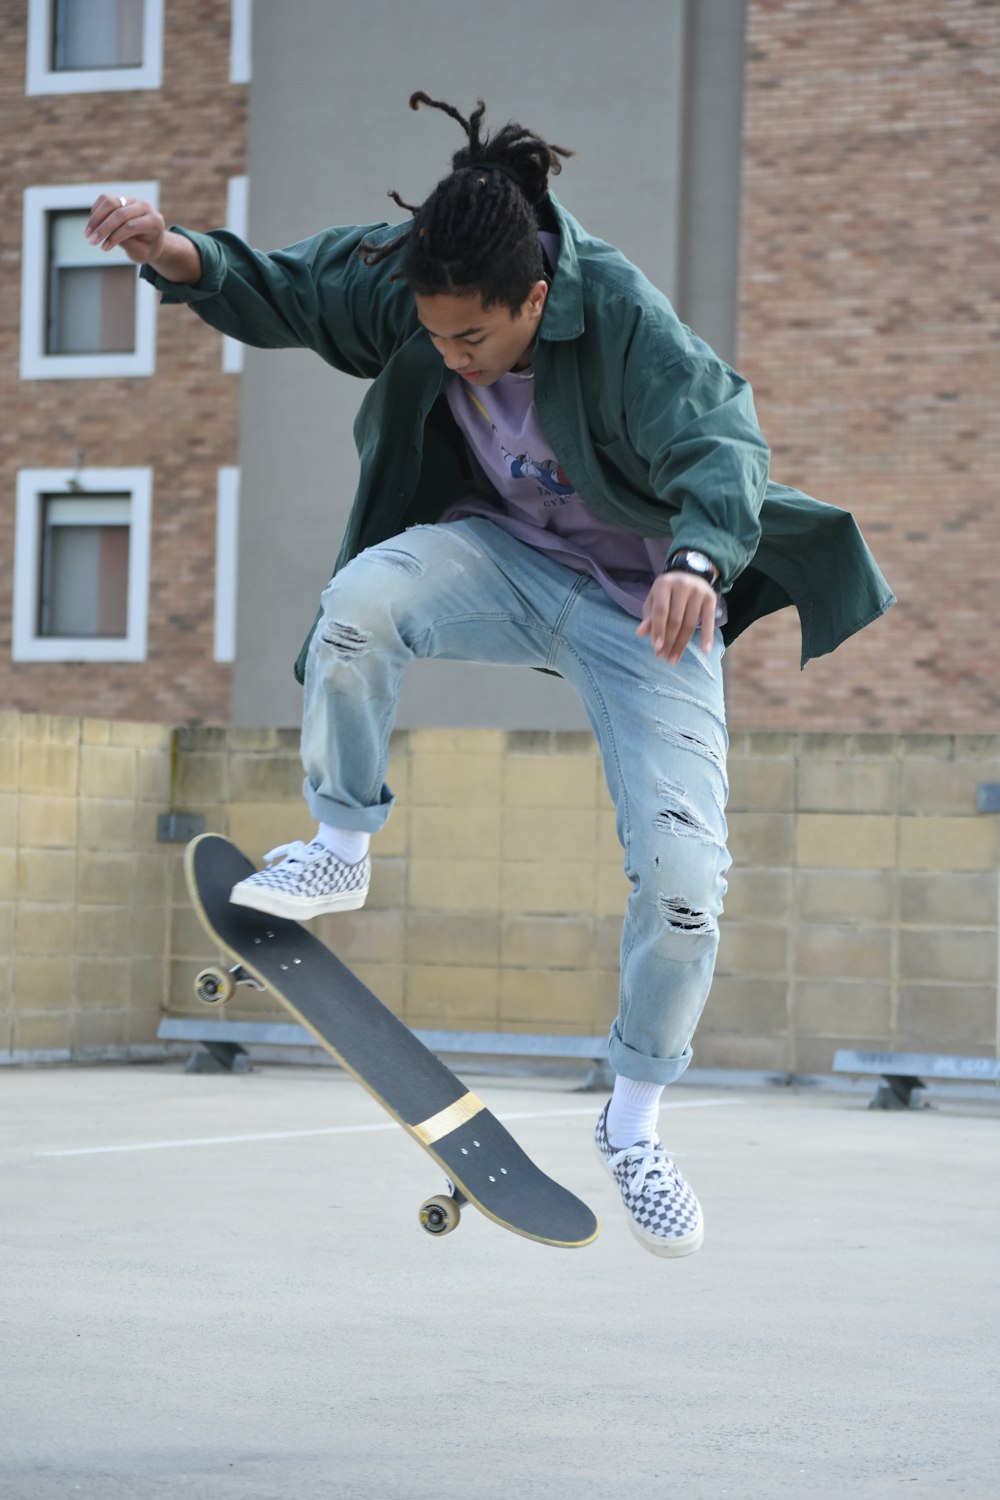 Mann in grünem Hoodie und blauer Jeans sitzt tagsüber auf dem Skateboard